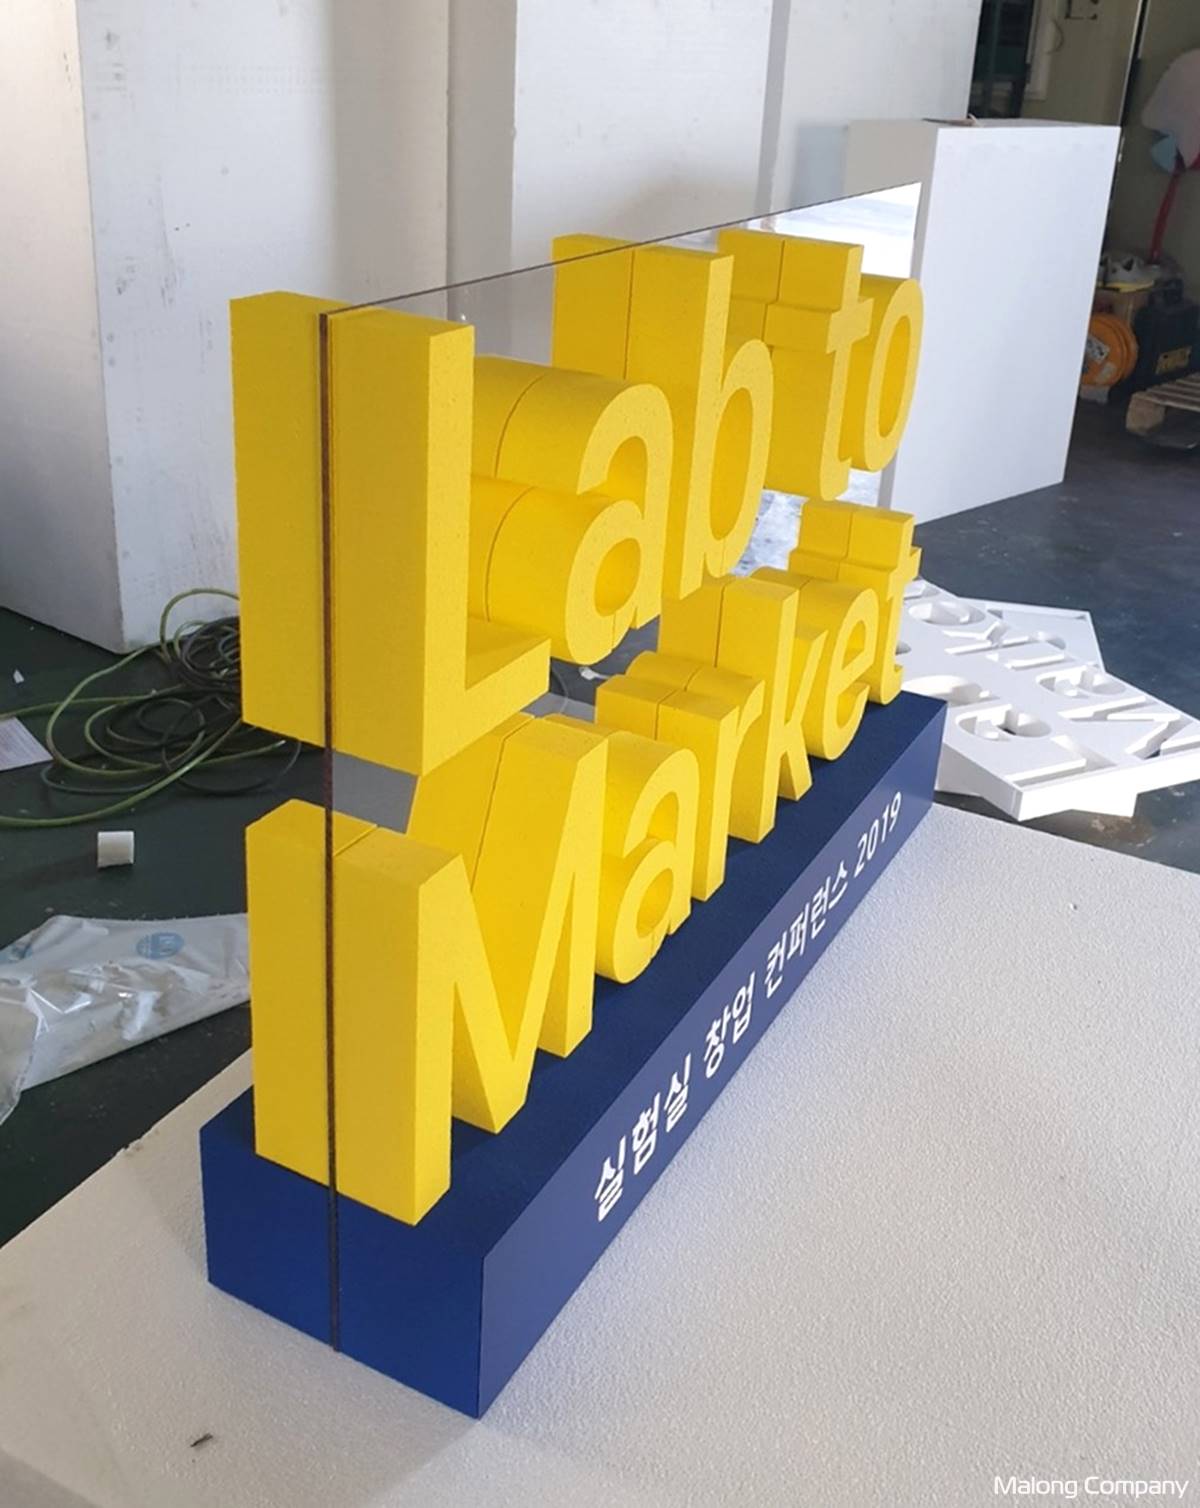 [글자 조형물] 스타트업 창업 박람회 대형 입체 글씨 조형물 3D 로고 제작 사례